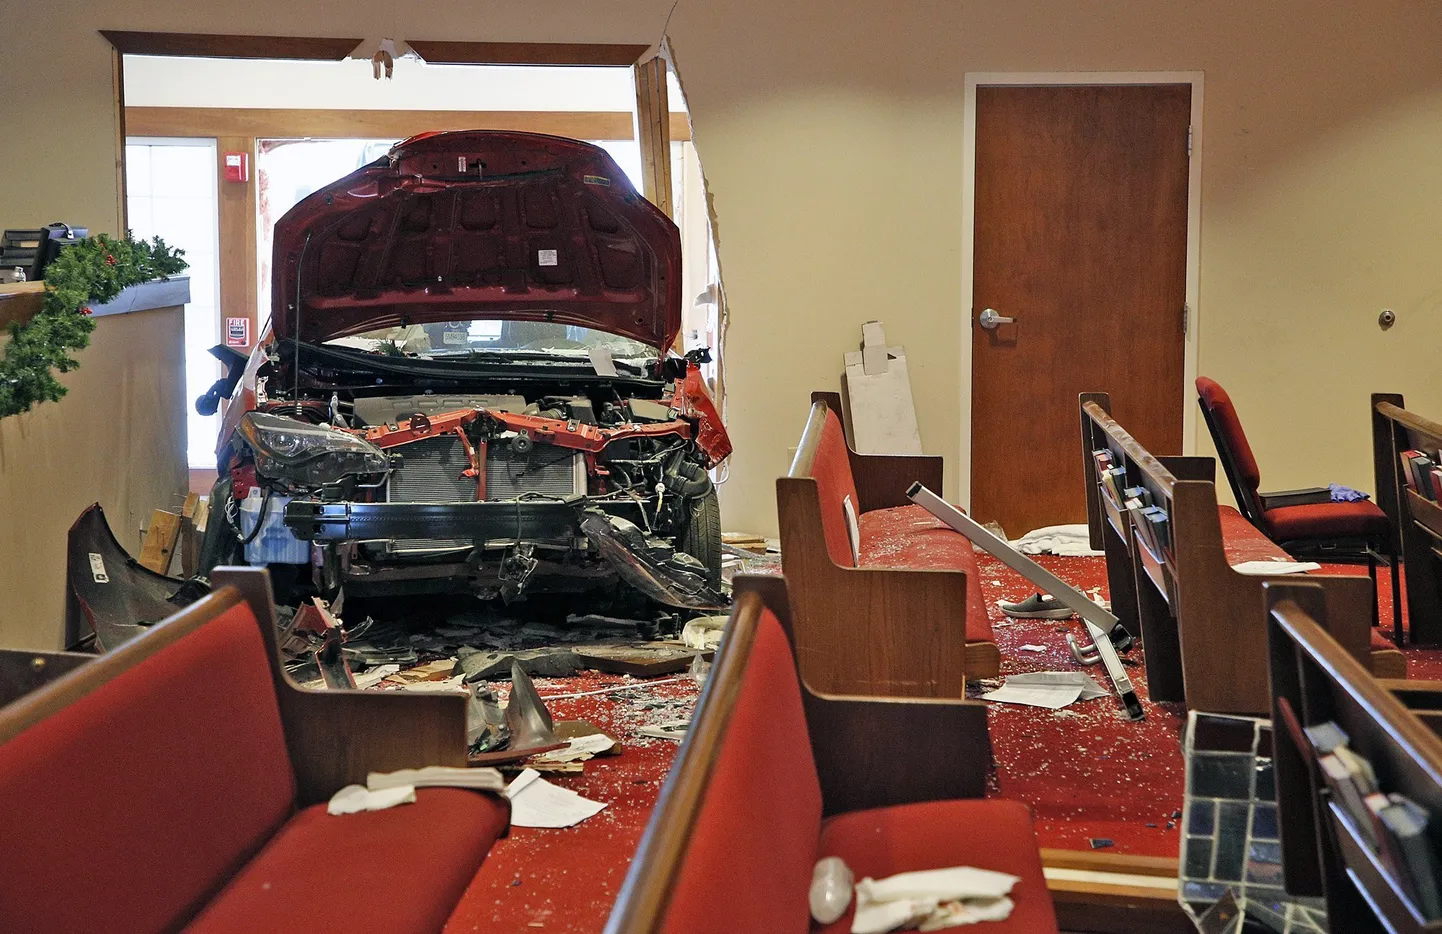 Ühendriikides sai Ohio osariigis kirikuhoonet ramminud auto tõttu viga kuus inimest.